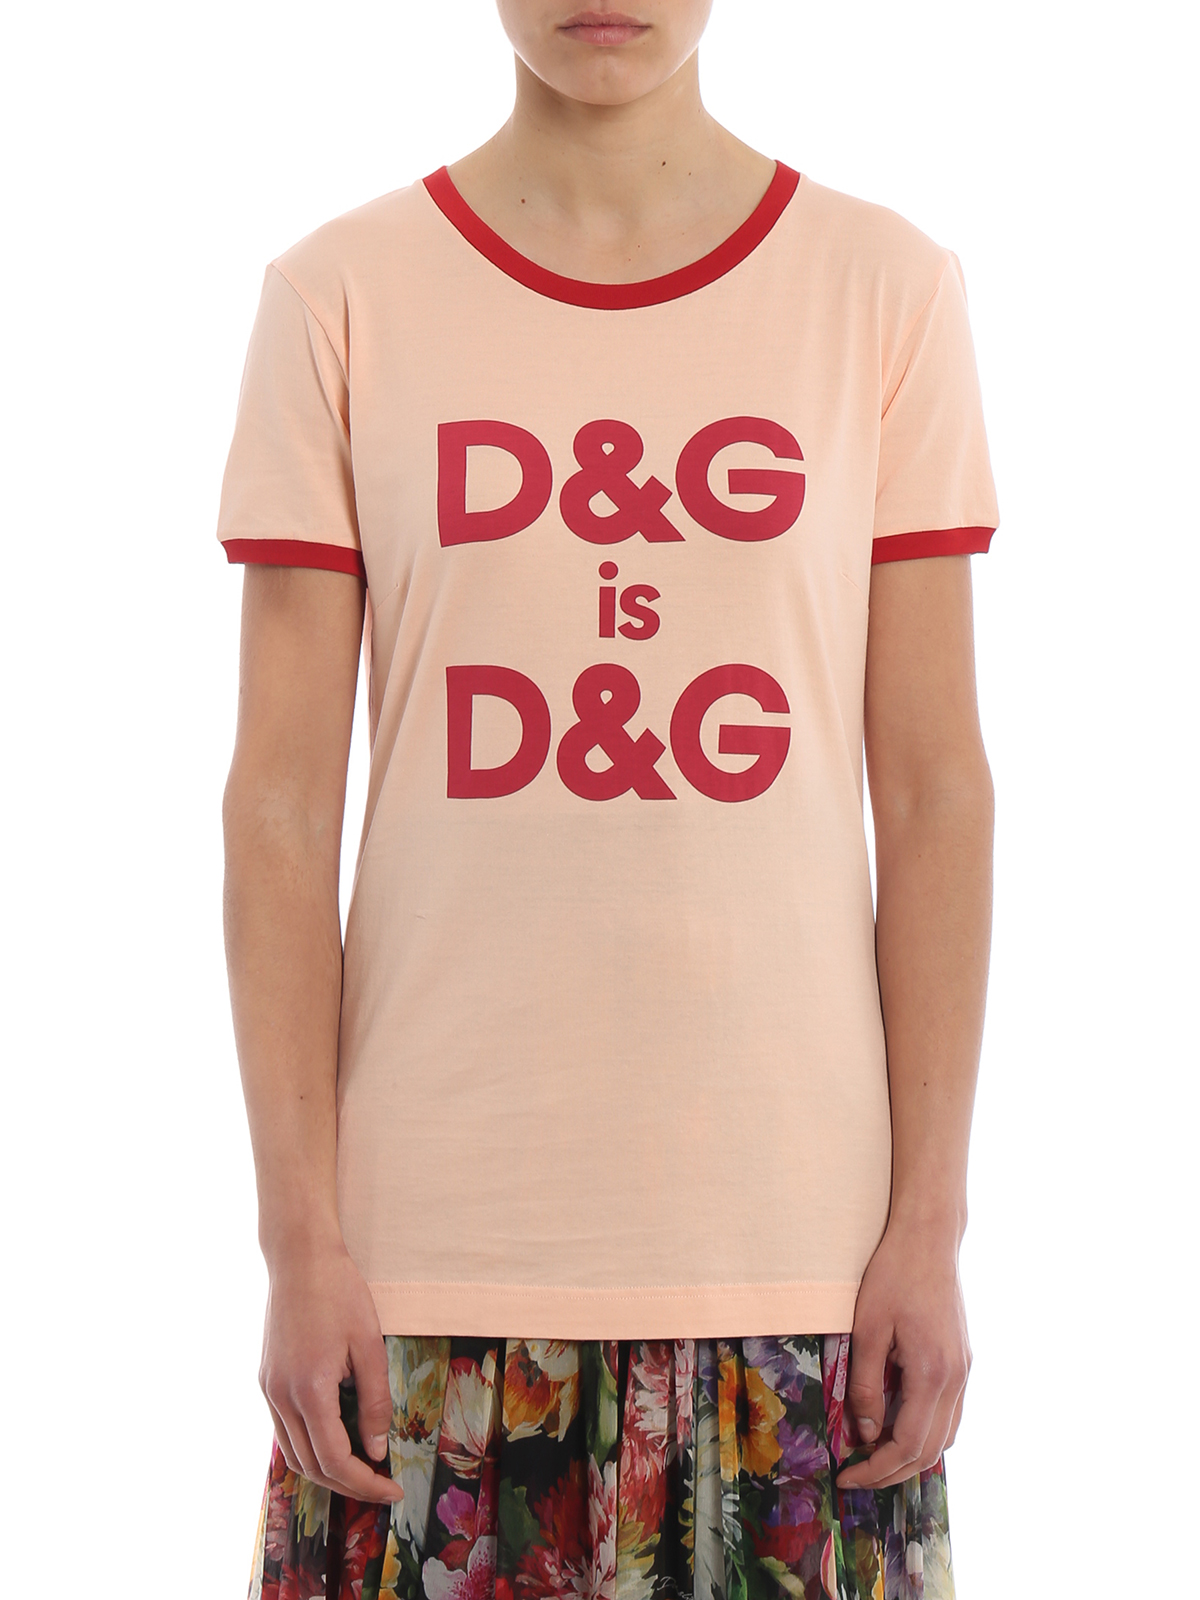 d & g shirts